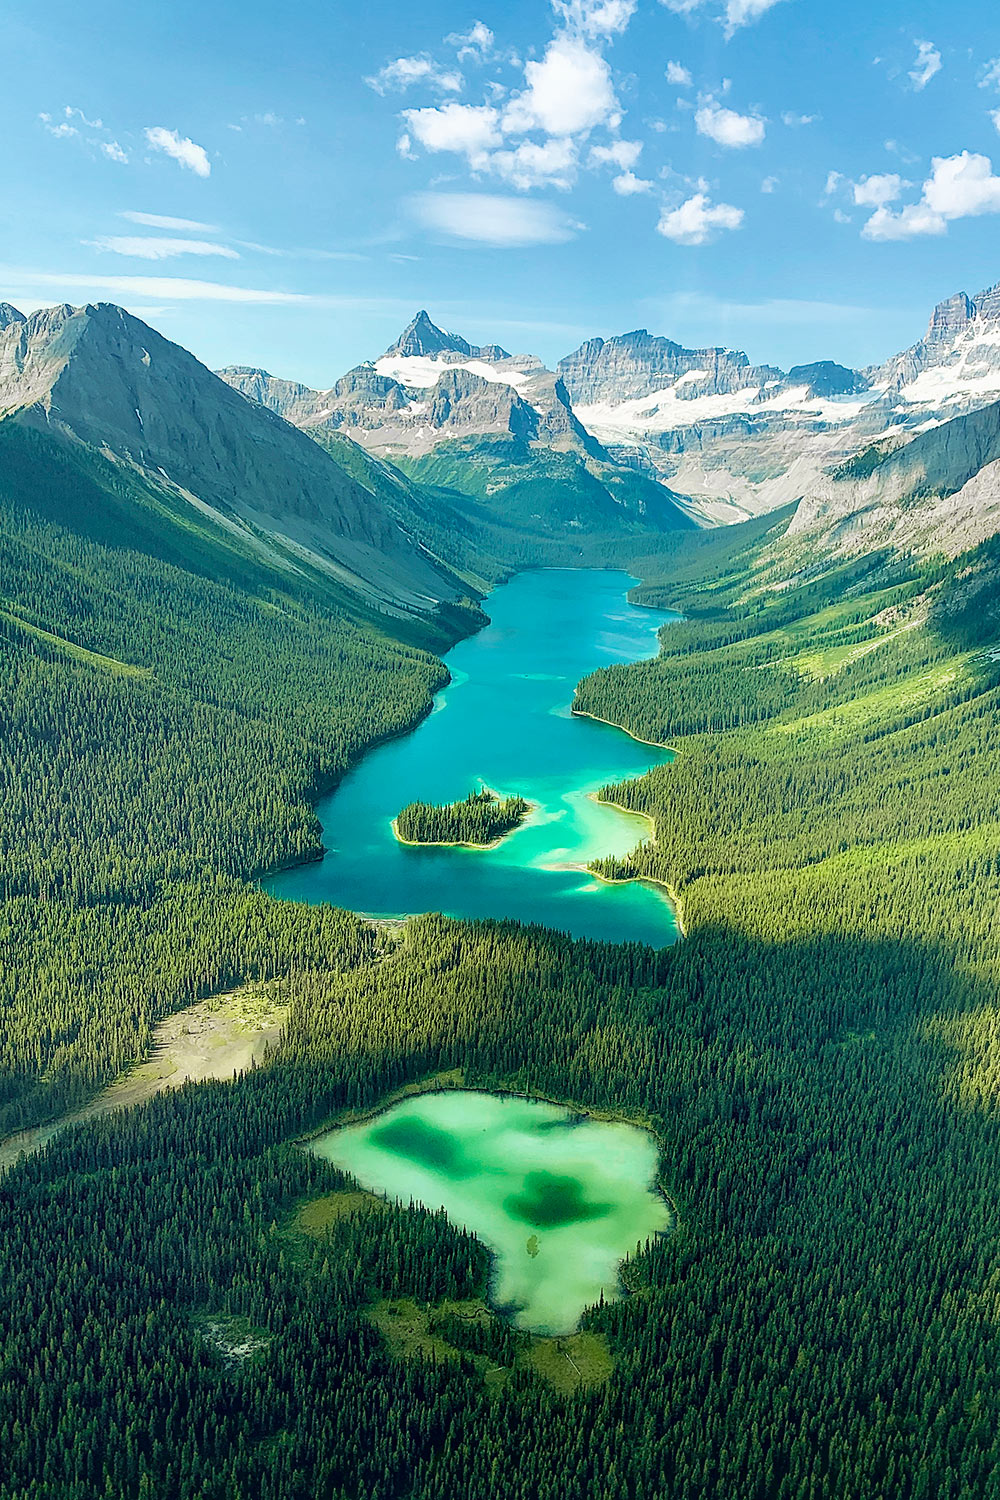 Lac Marvel, mont Assibiboine, Rocheuses, Canada / Marvel Lake, Mount Assibiboine, Rockies, Canada.